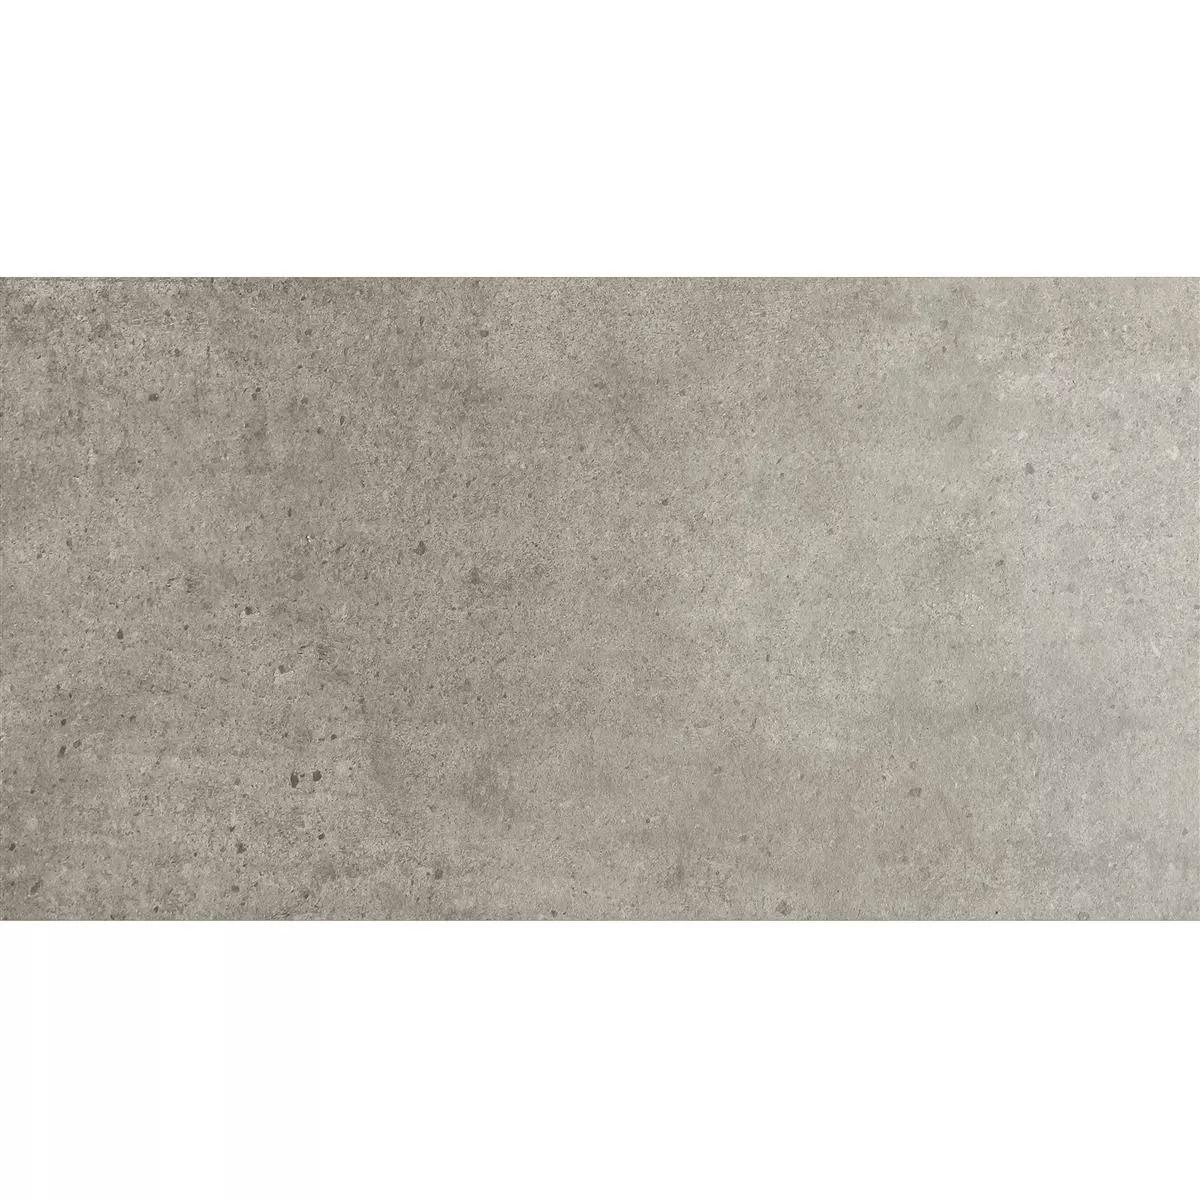 Πρότυπο Πλακάκια Δαπέδου Πέτρινη Όψη Despina Ανοιχτό Γκρι 30x60cm